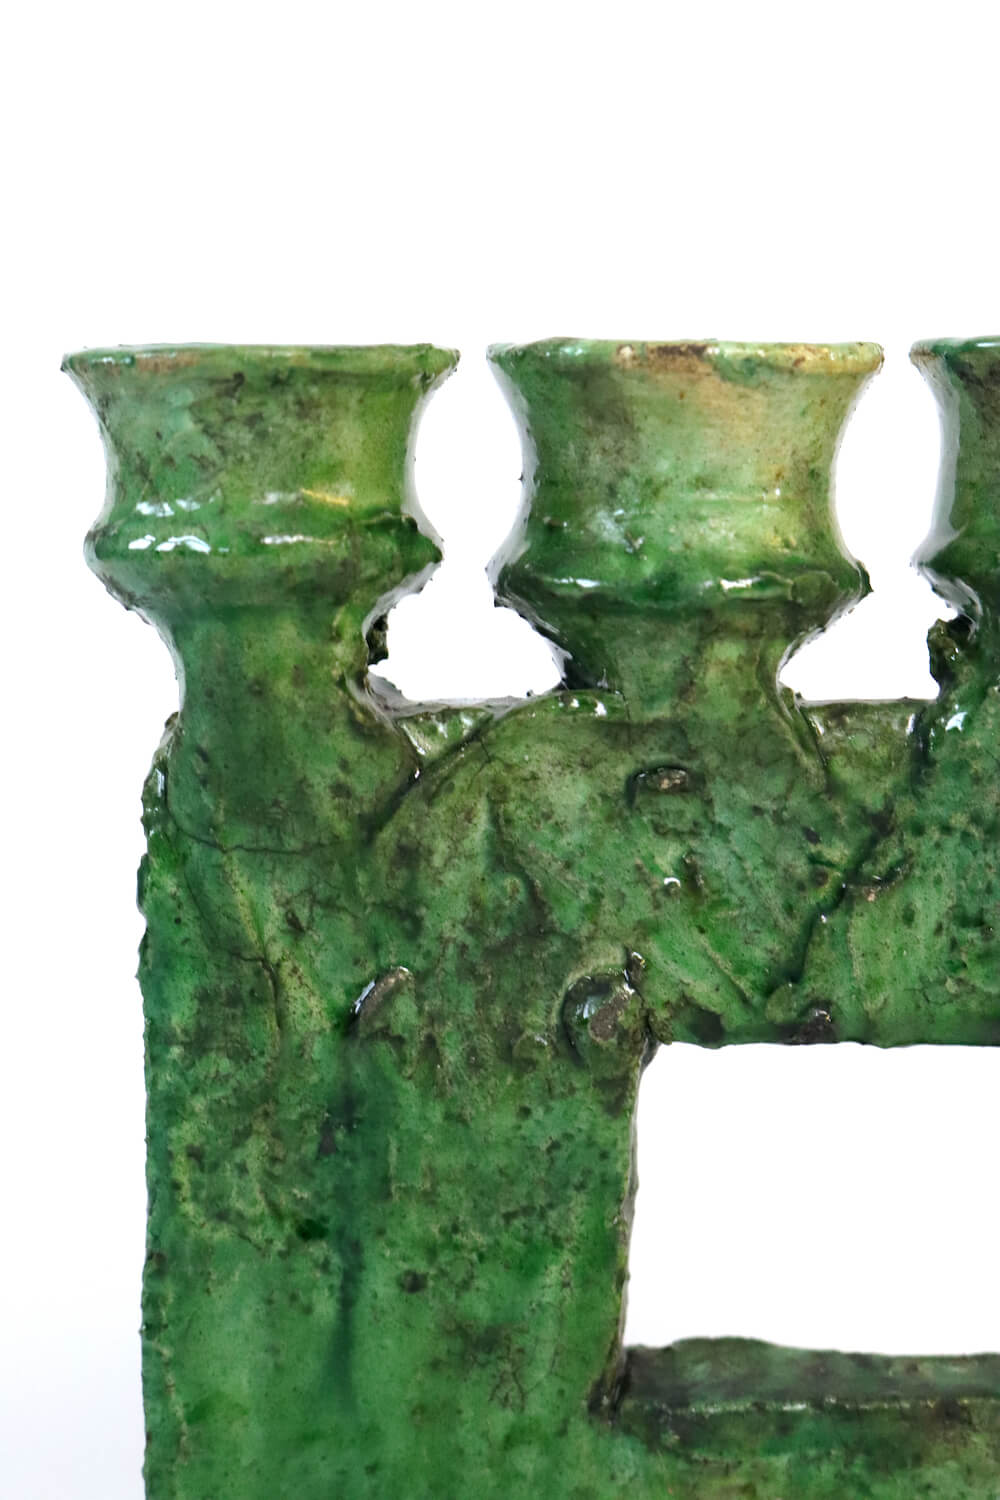 Großer Kerzenständer aus Keramik grün